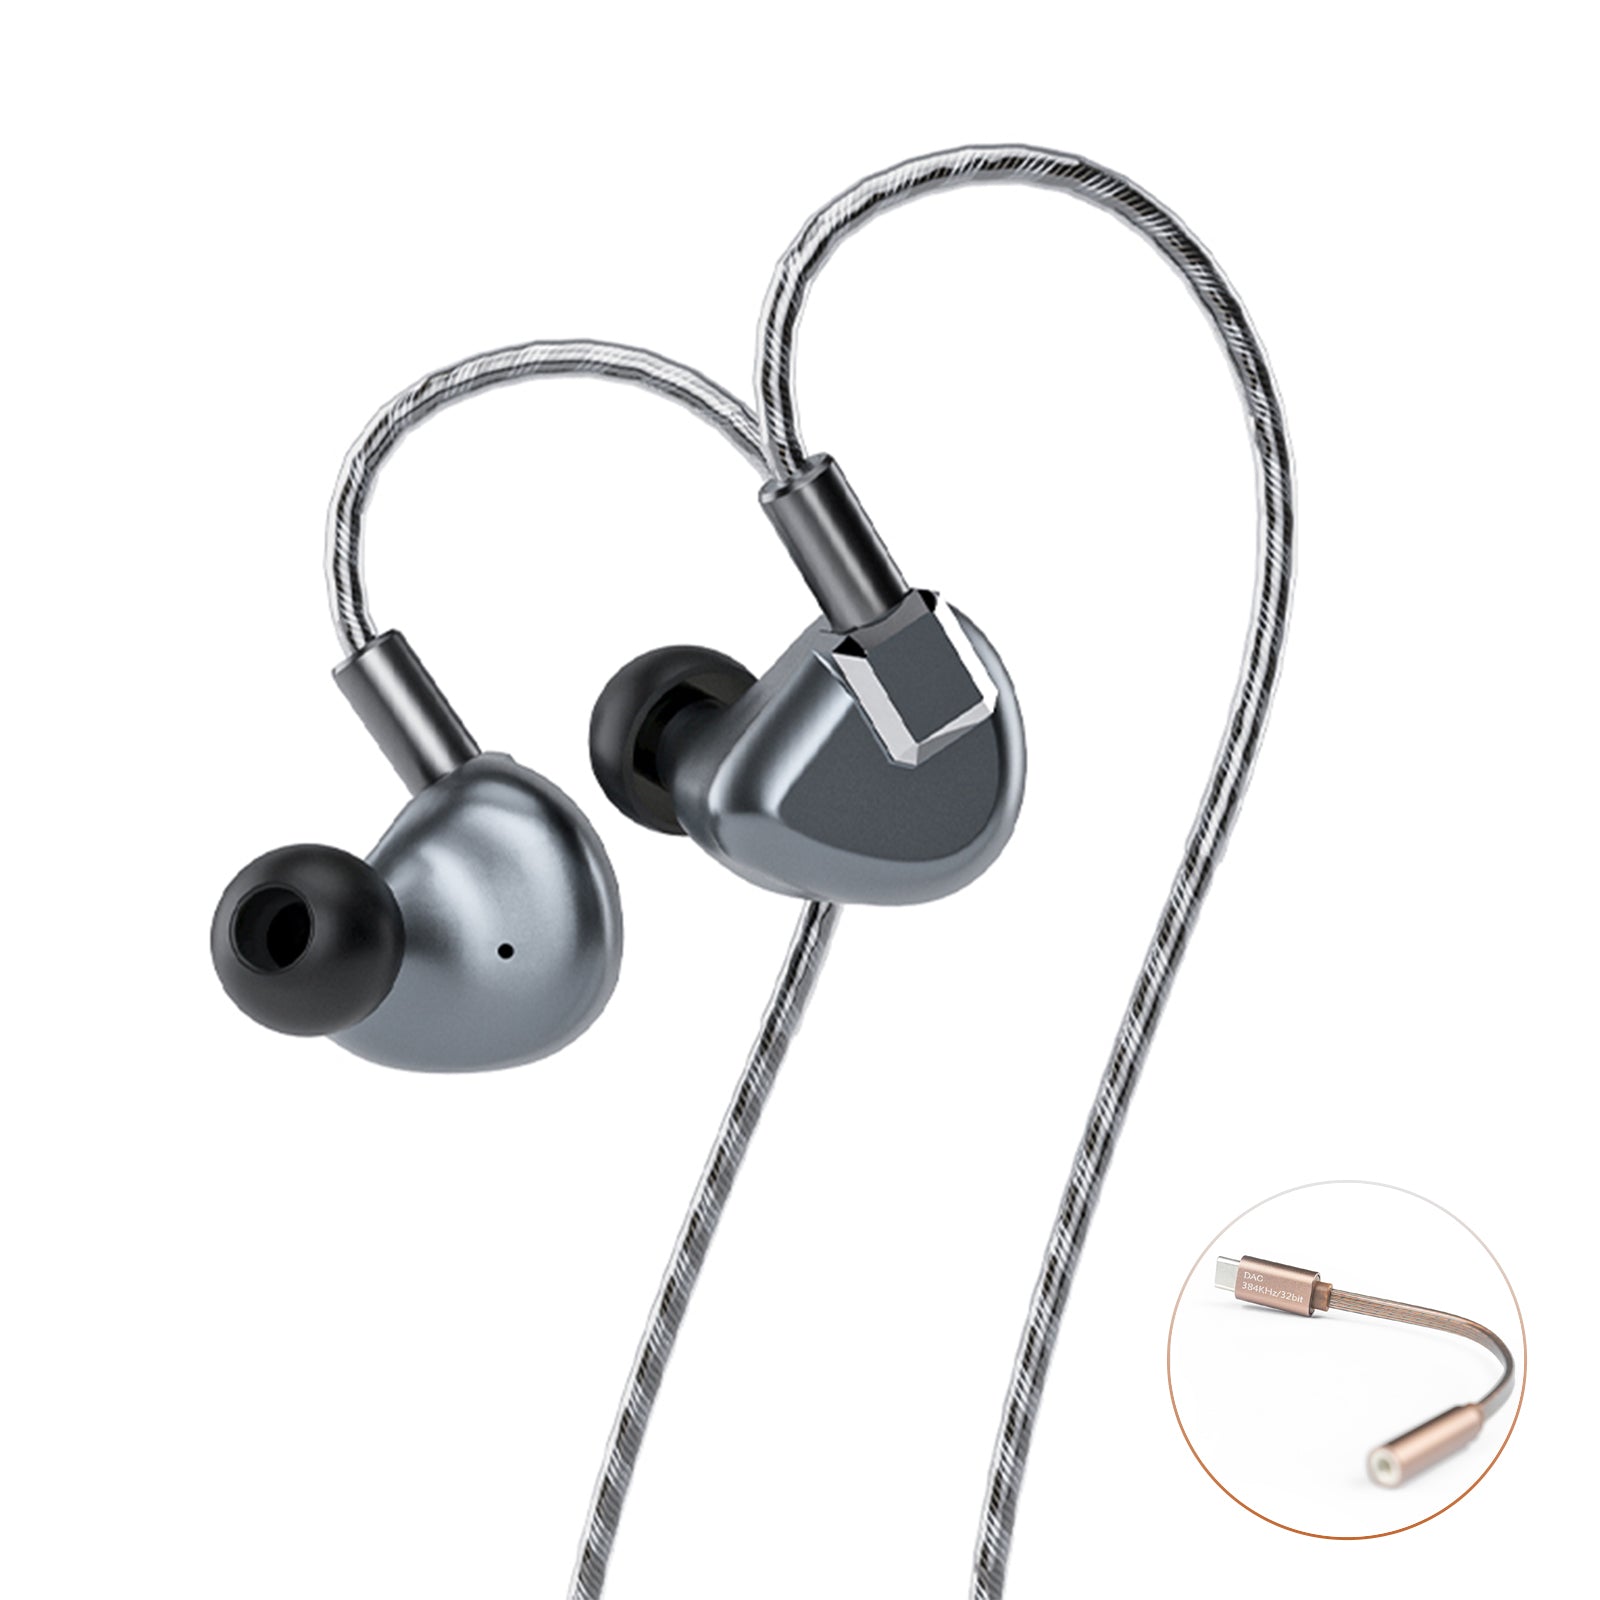 LETSHUOER S12 | 14.8mm planar IEMs and best value Hi-Fi earphones 